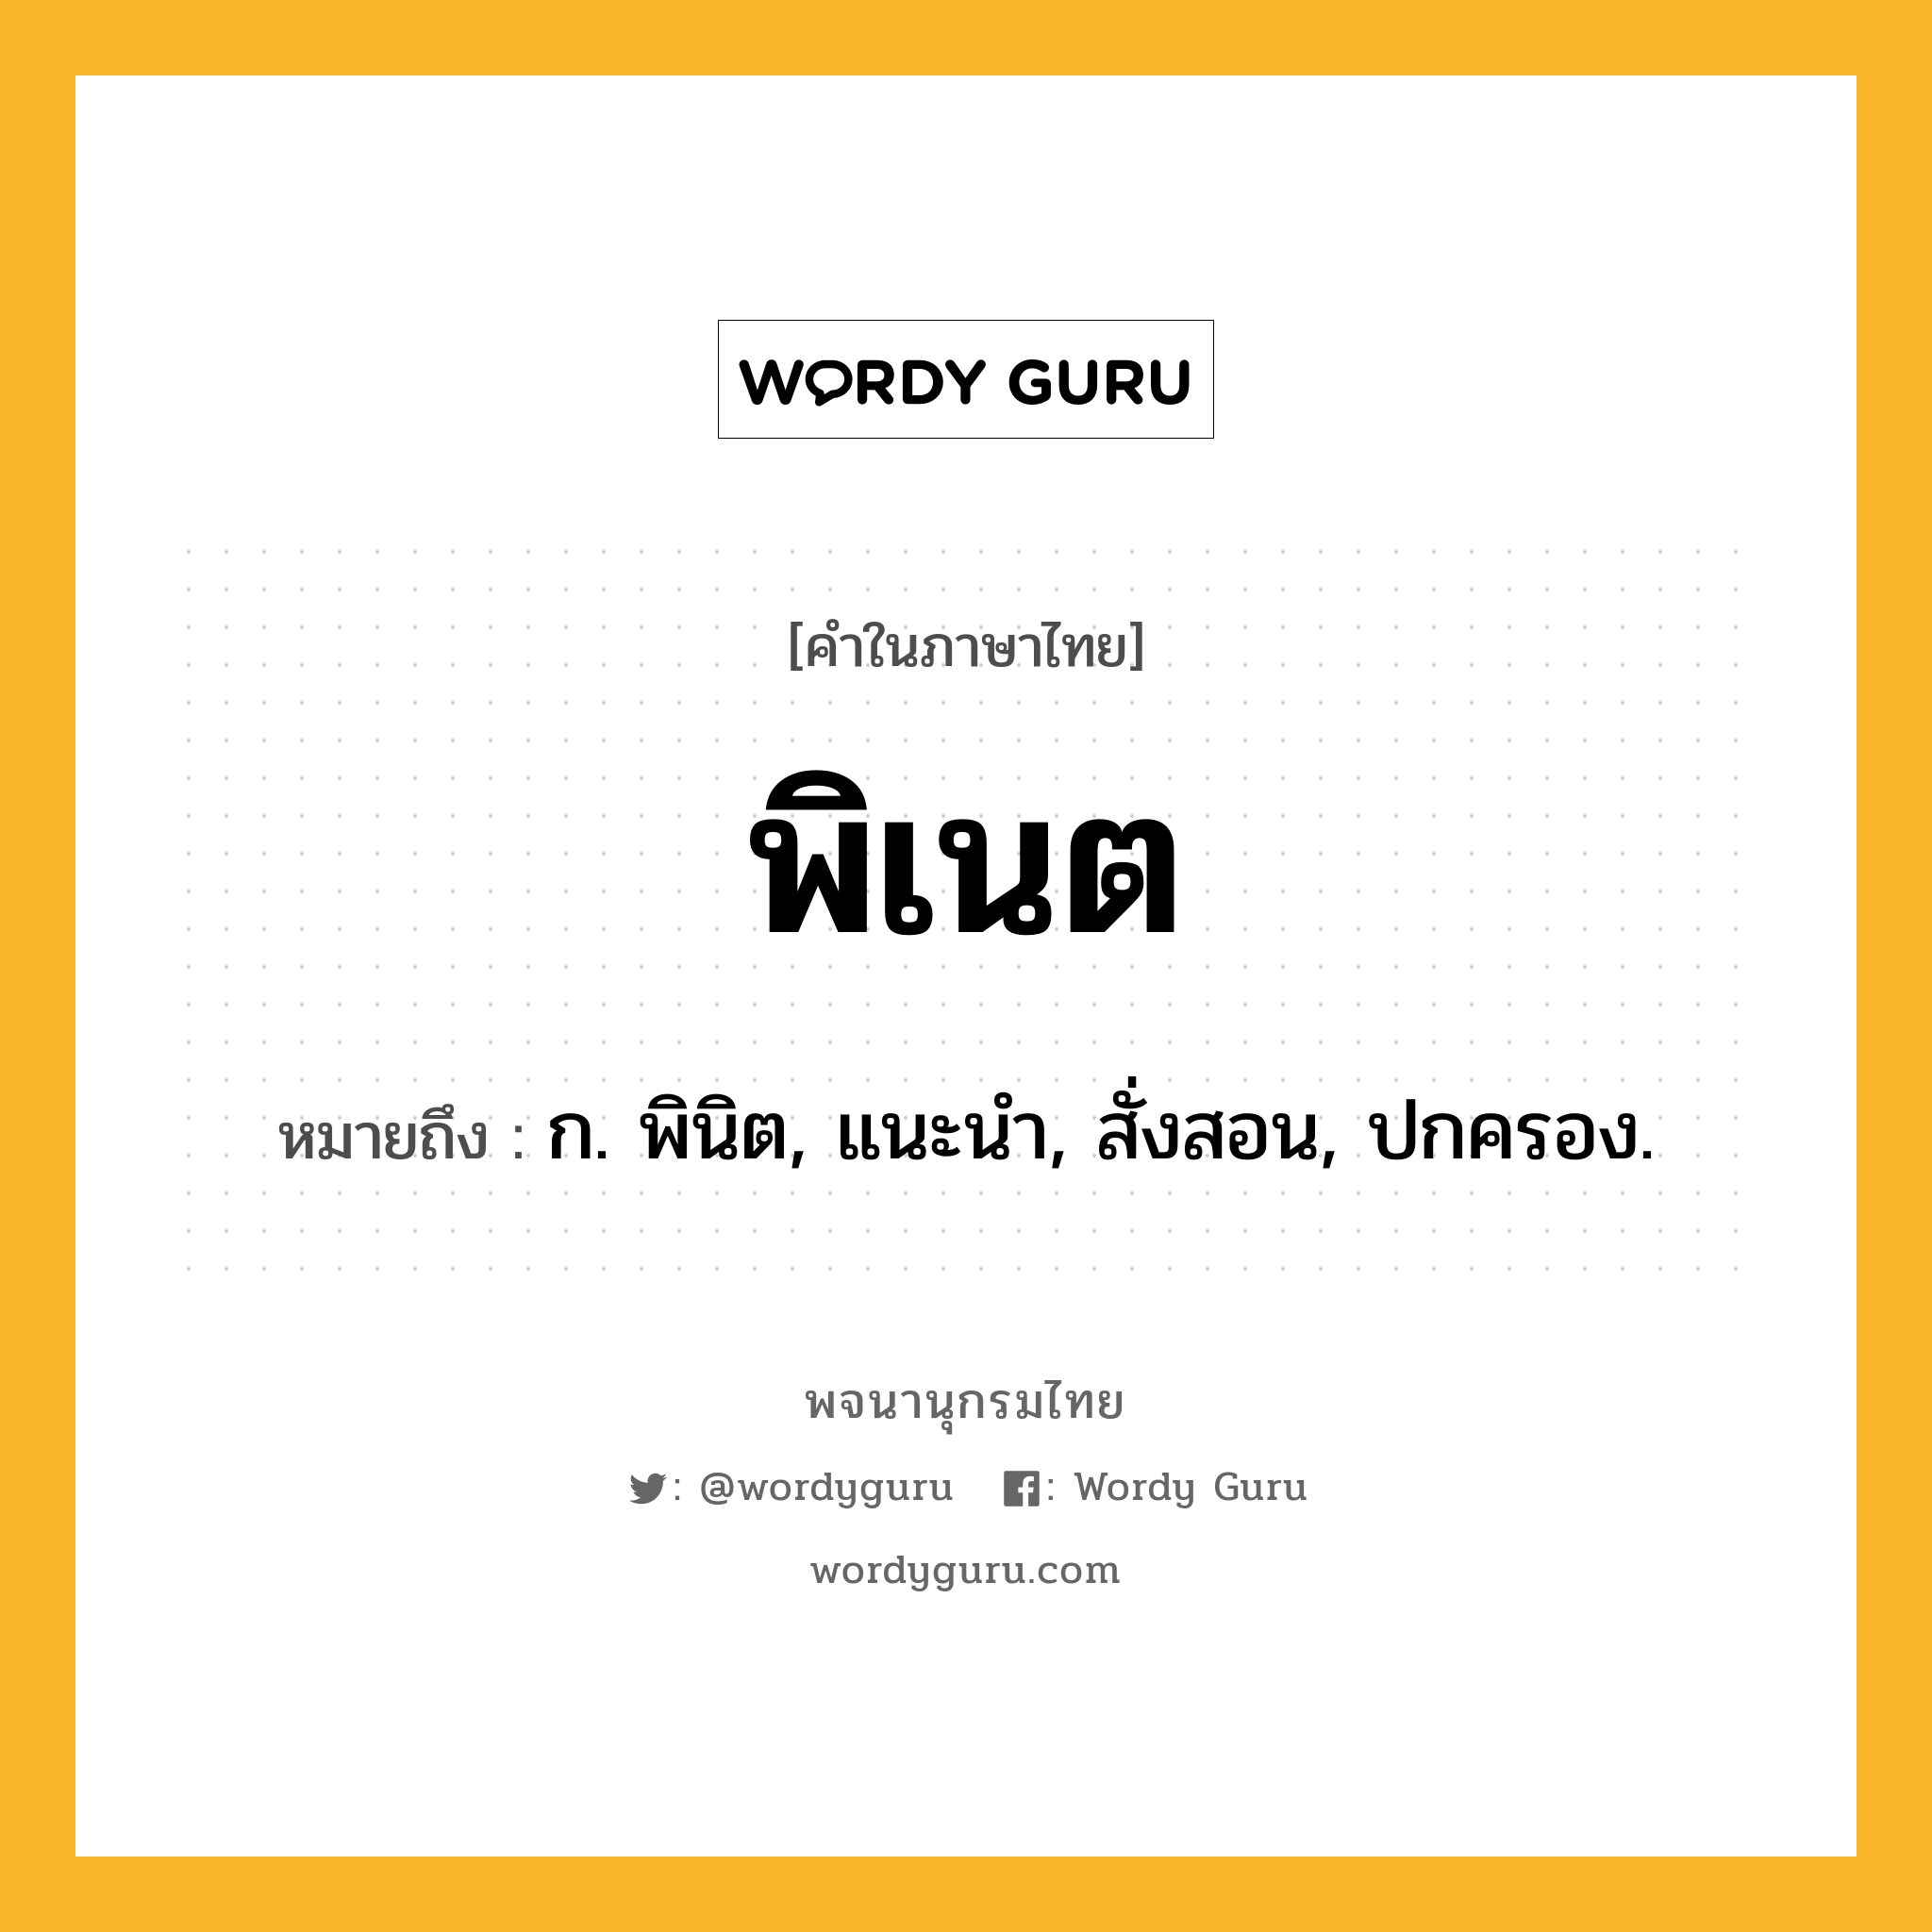 พิเนต หมายถึงอะไร?, คำในภาษาไทย พิเนต หมายถึง ก. พินิต, แนะนํา, สั่งสอน, ปกครอง.